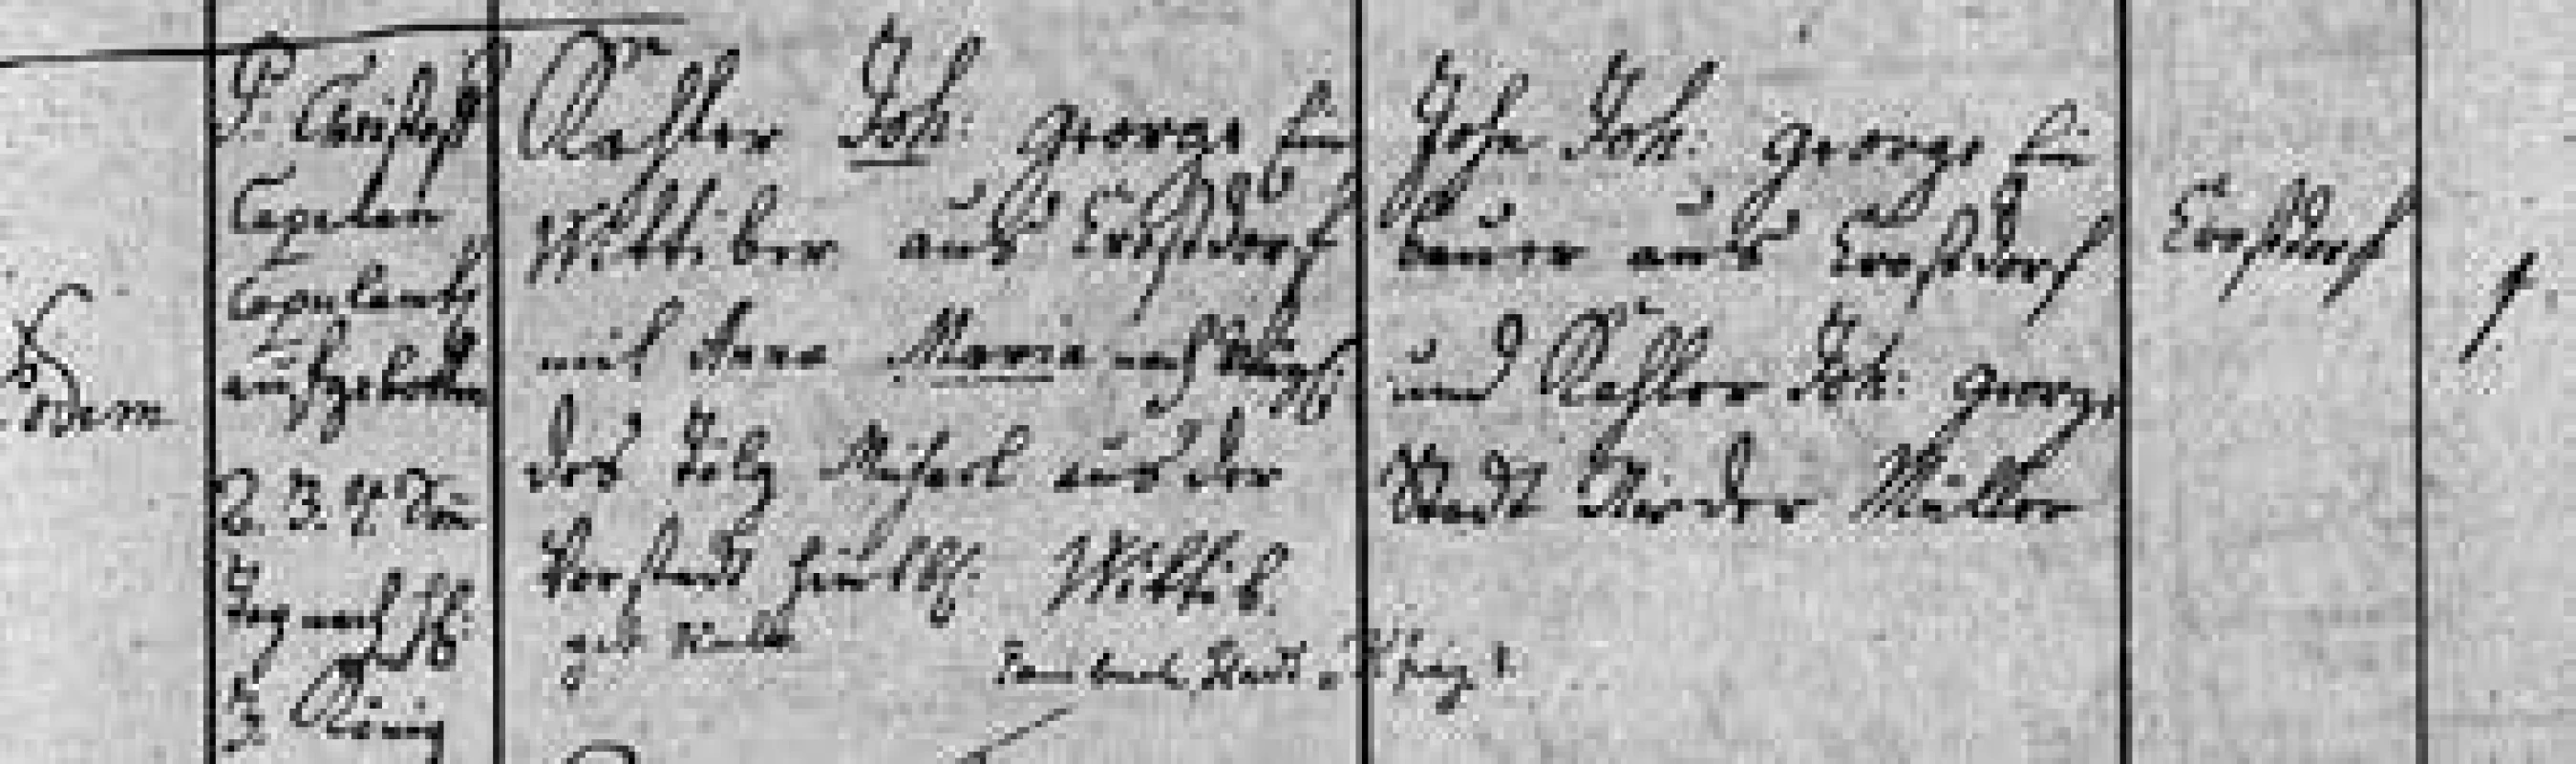 Zápis sňatku Josefových prarodičů
J. G. Ch. Kahlera a A. Tölgové (1781)